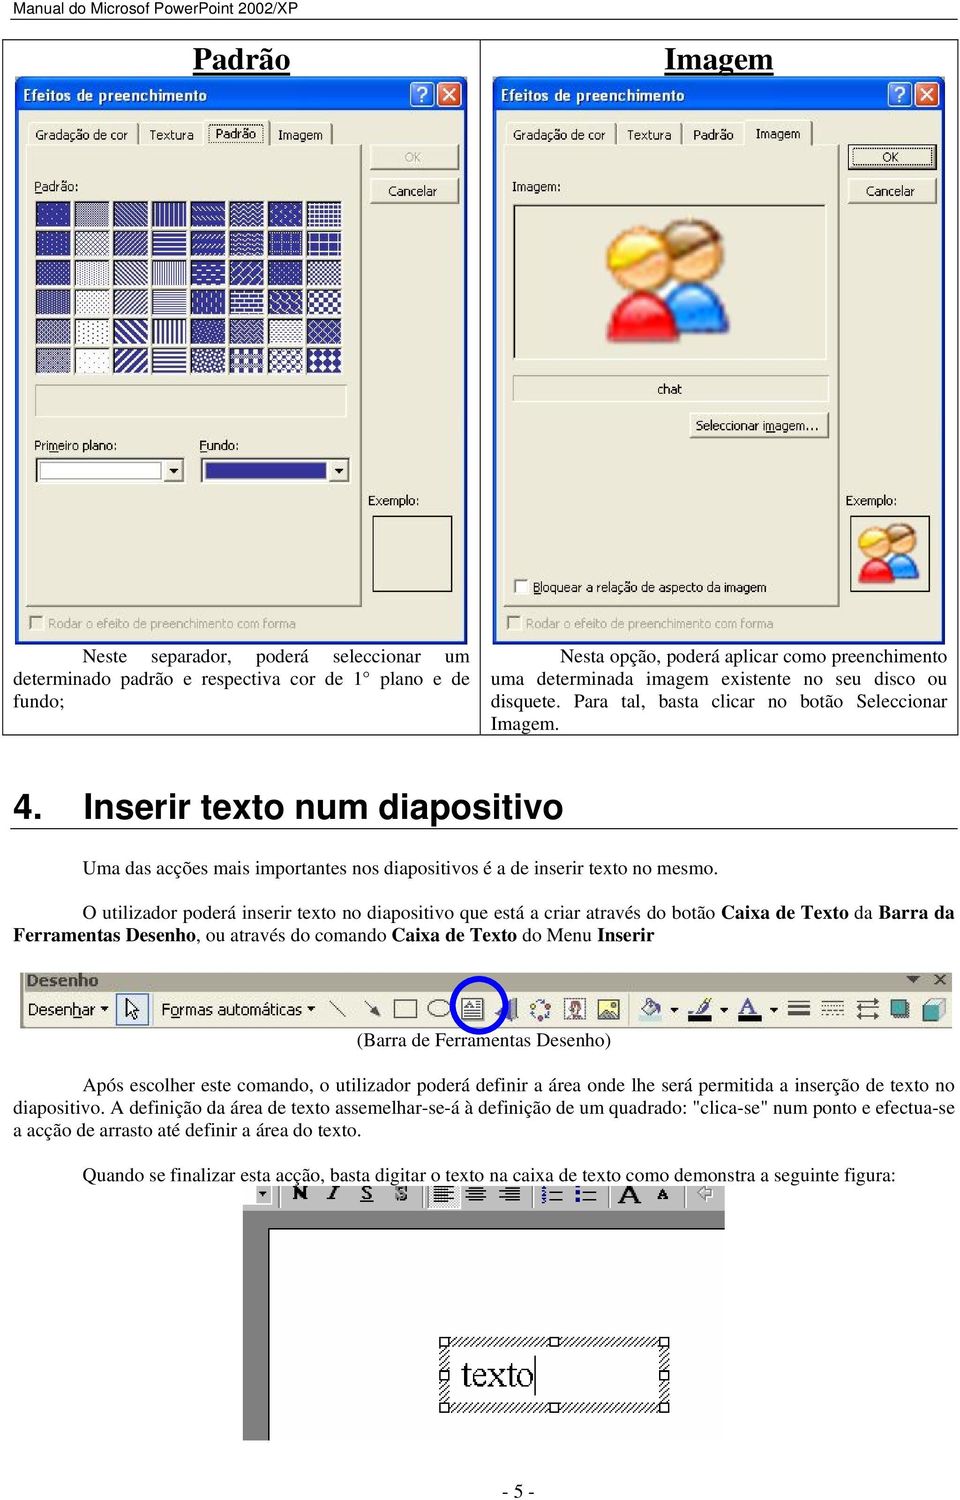 O utilizador poderá inserir texto no diapositivo que está a criar através do botão Caixa de Texto da Barra da Ferramentas Desenho, ou através do comando Caixa de Texto do Menu Inserir (Barra de